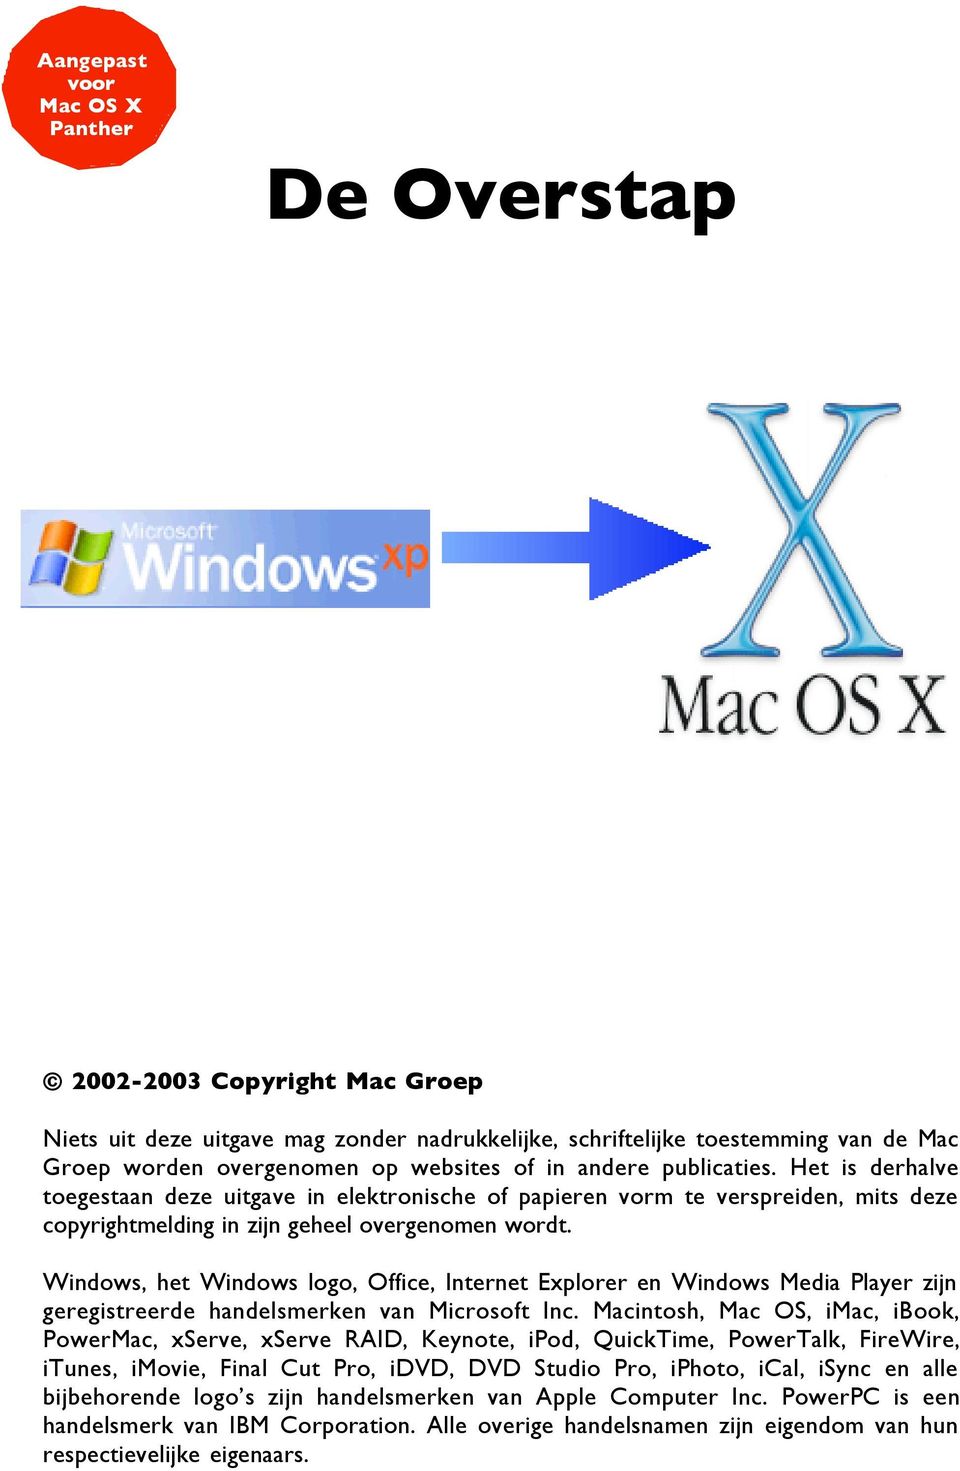 Windows, het Windows logo, Office, Internet Explorer en Windows Media Player zijn geregistreerde handelsmerken van Microsoft Inc.